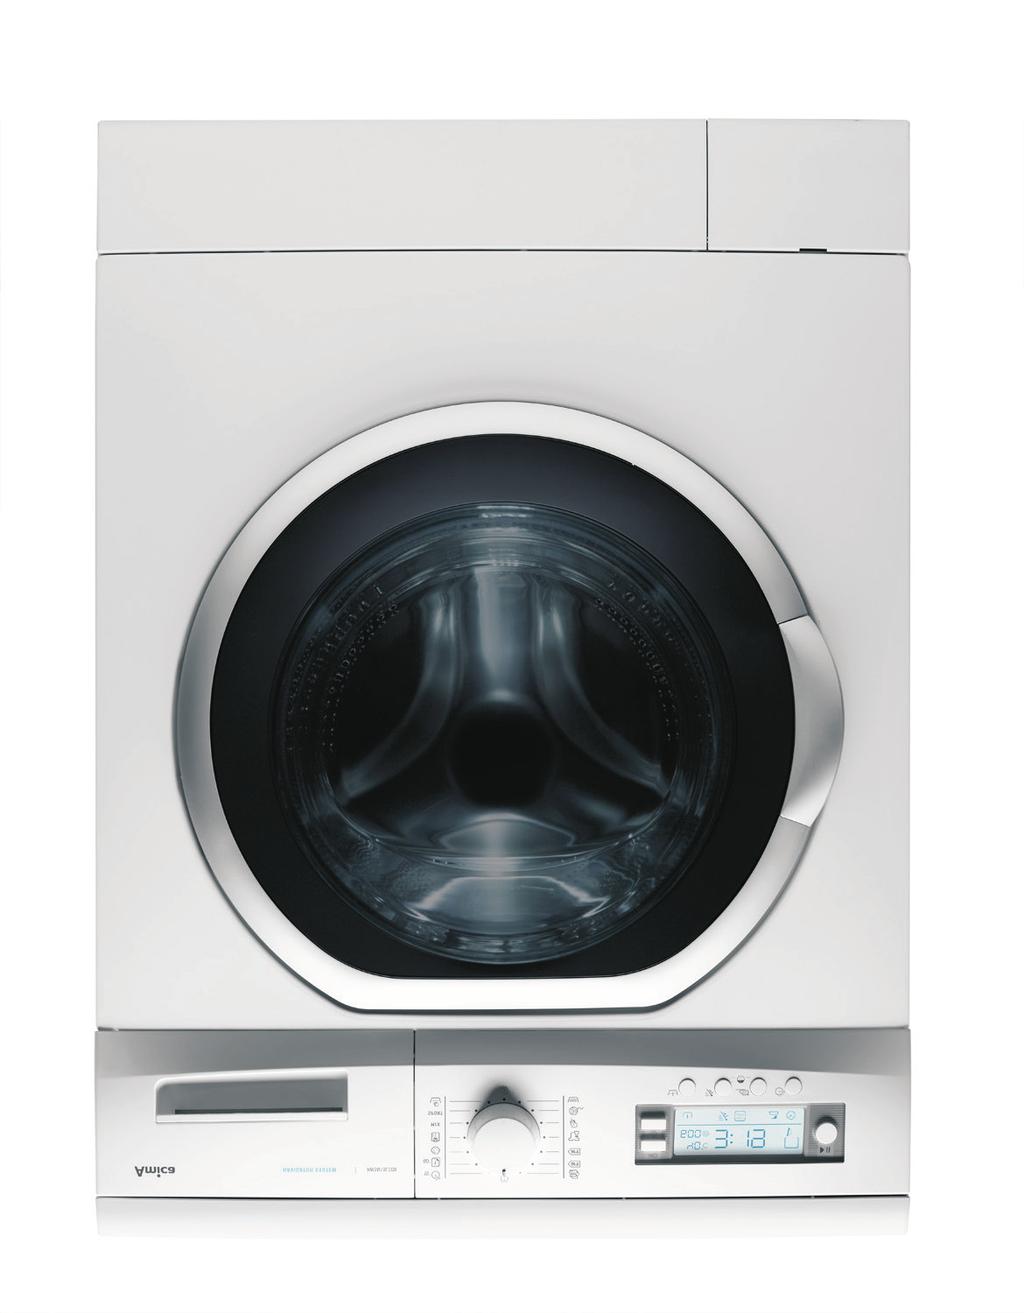 OZNAČENÍ SYMBOLŮ NA ETIKETÁCH ODĚVŮ I. Praní 90 praní v teplotě 90 C normální v teplotě 60 C normální v teplotě 40 C NEPRÁT! jemné ruční II.